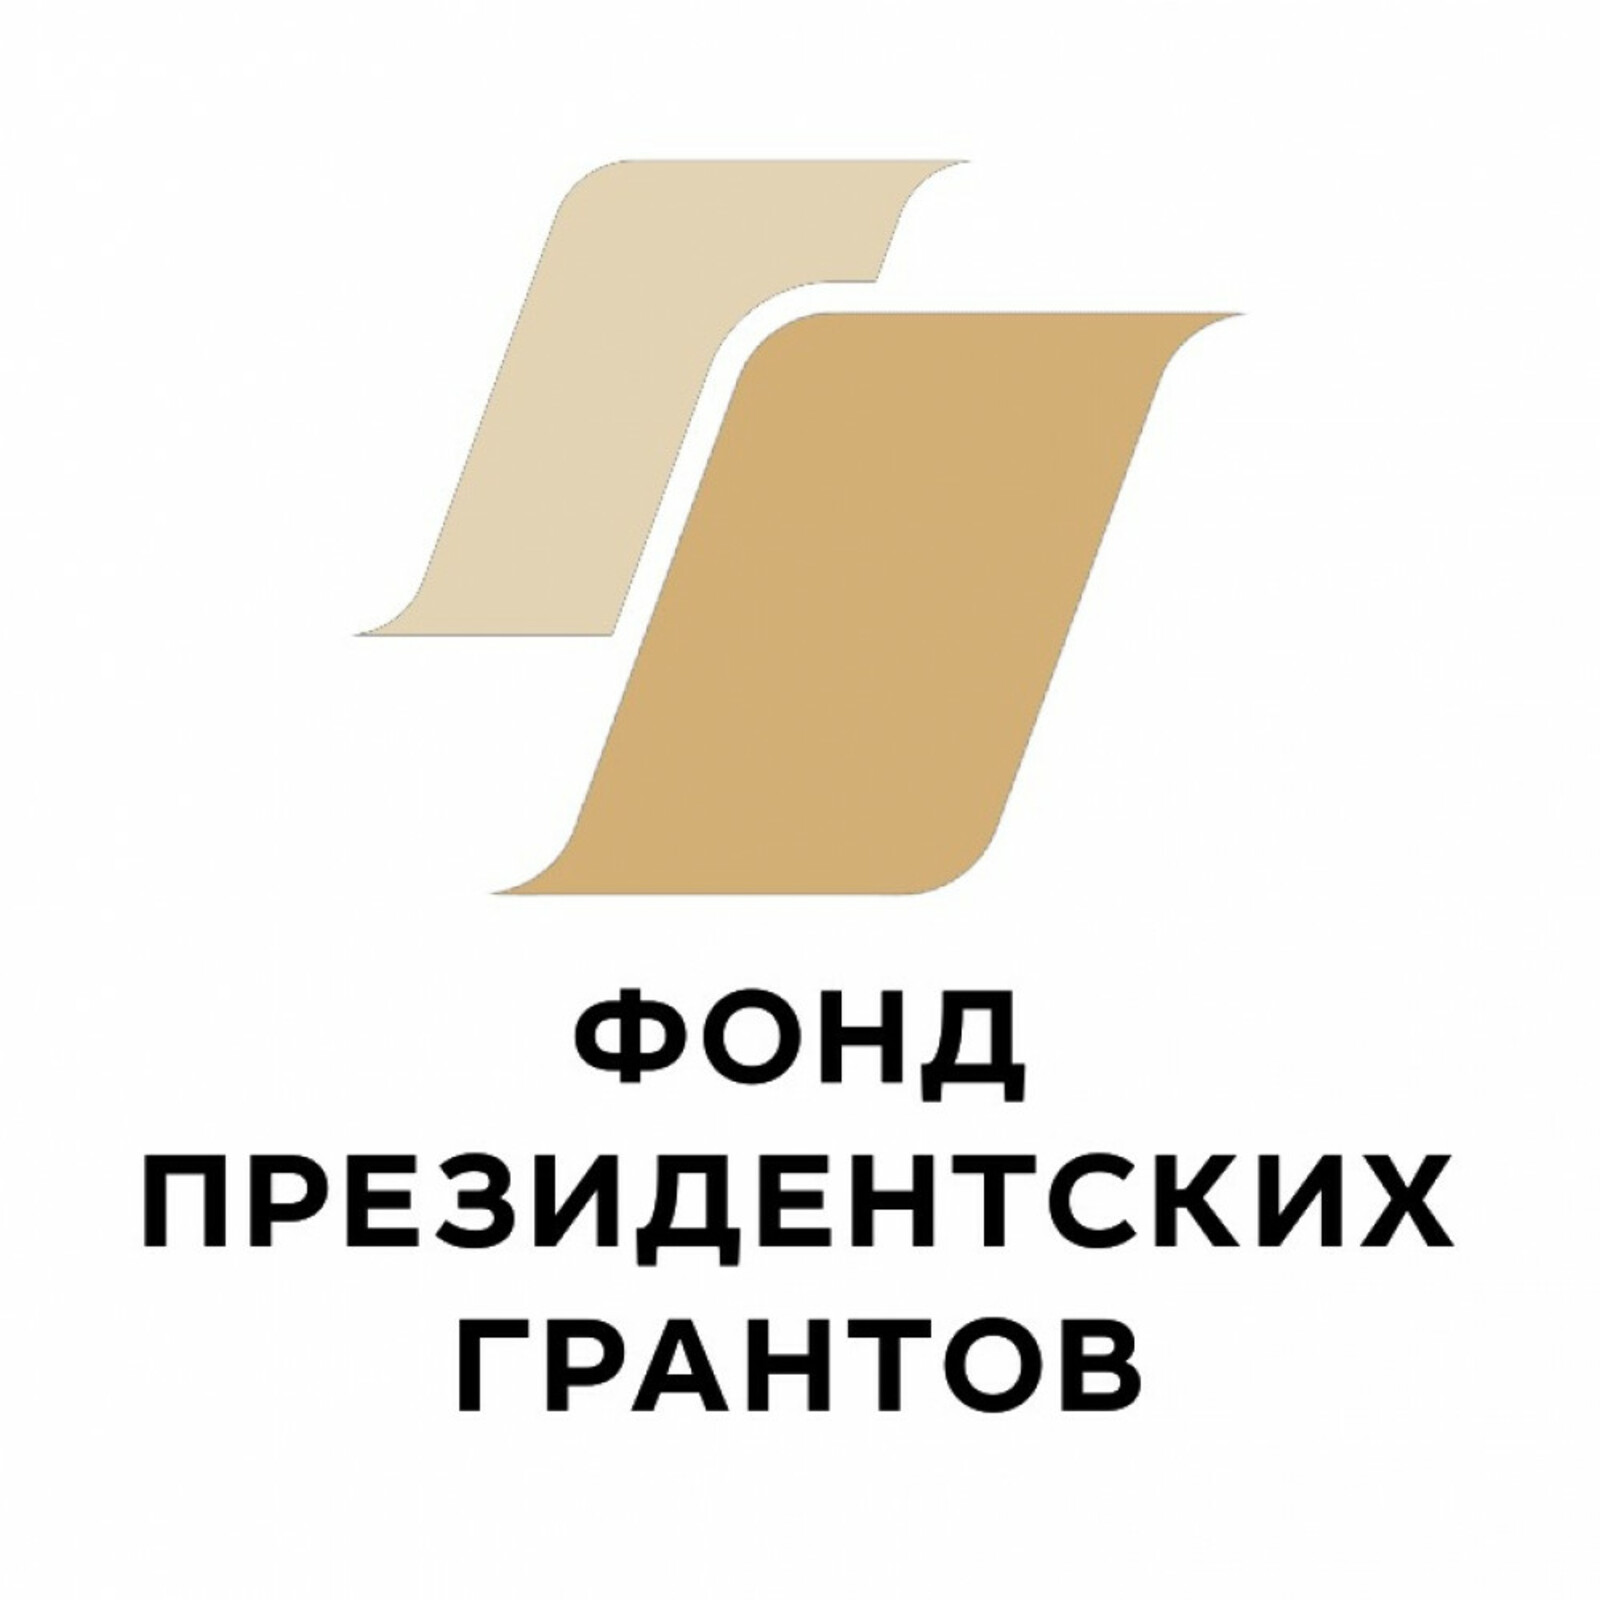 Башкортостан – второй регион в РФ по количеству победителей второго конкурса президентских грантов